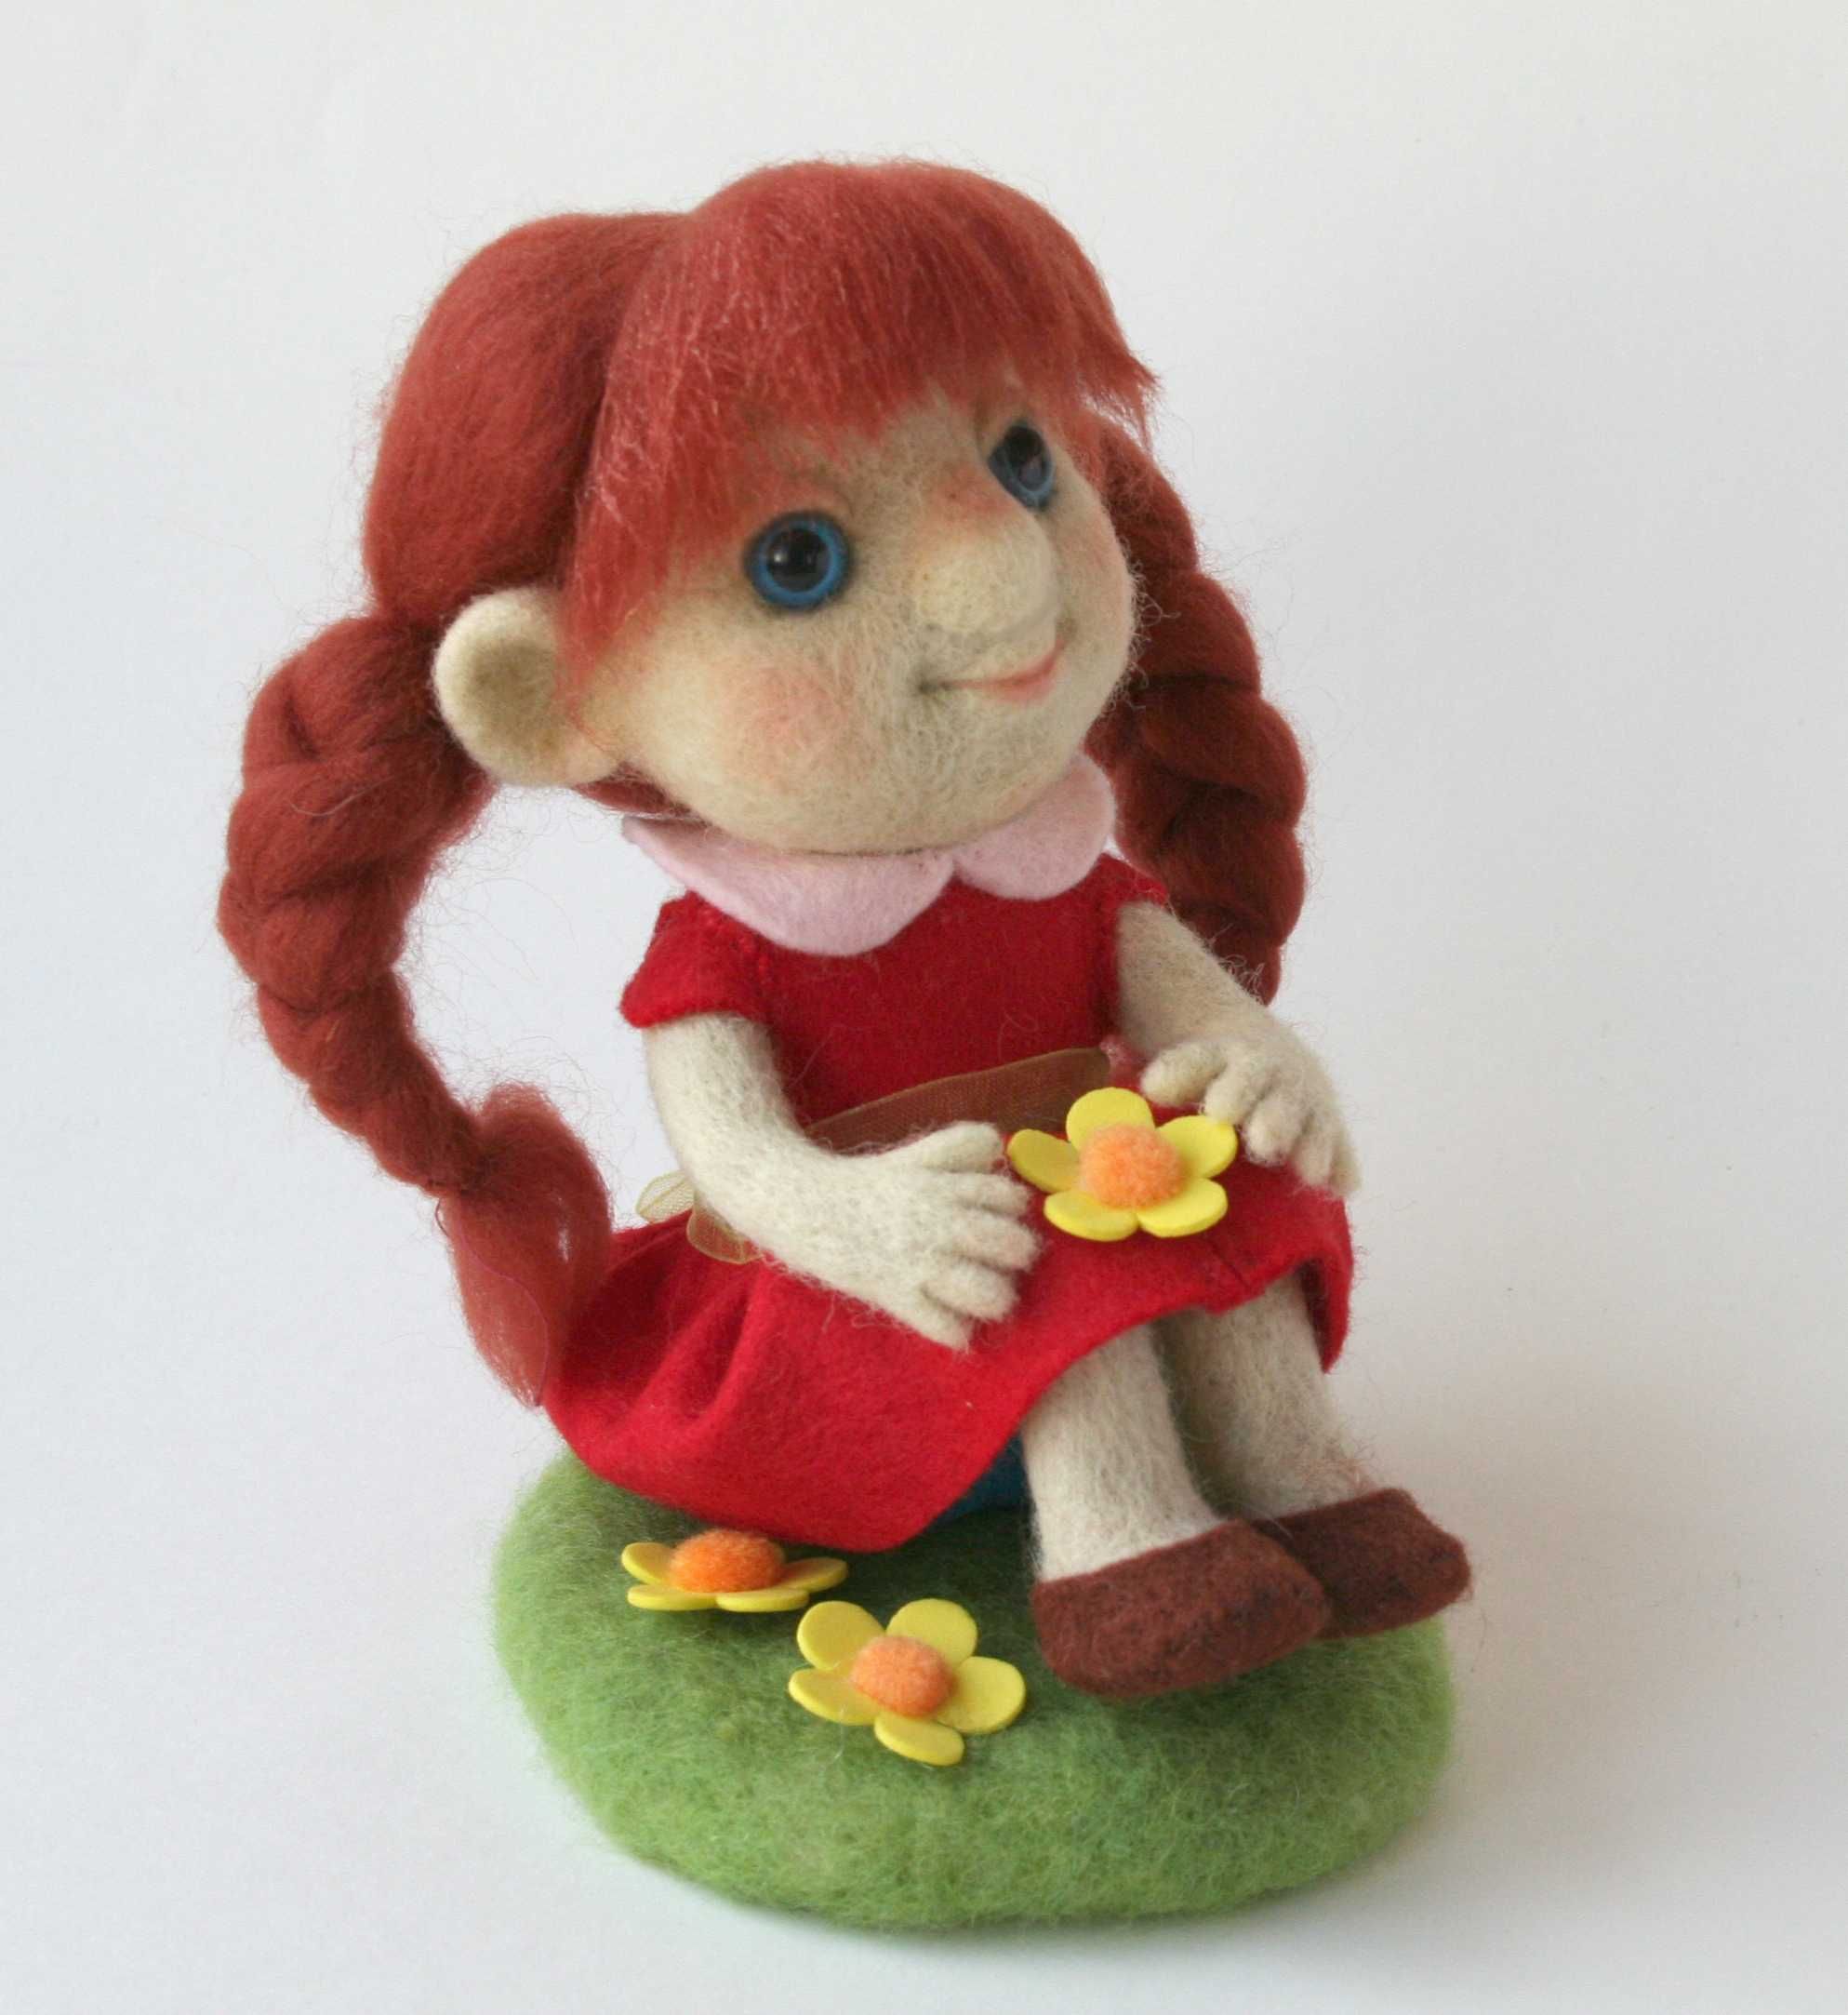 Валяная игрушка "Девочка с рыжими косами".